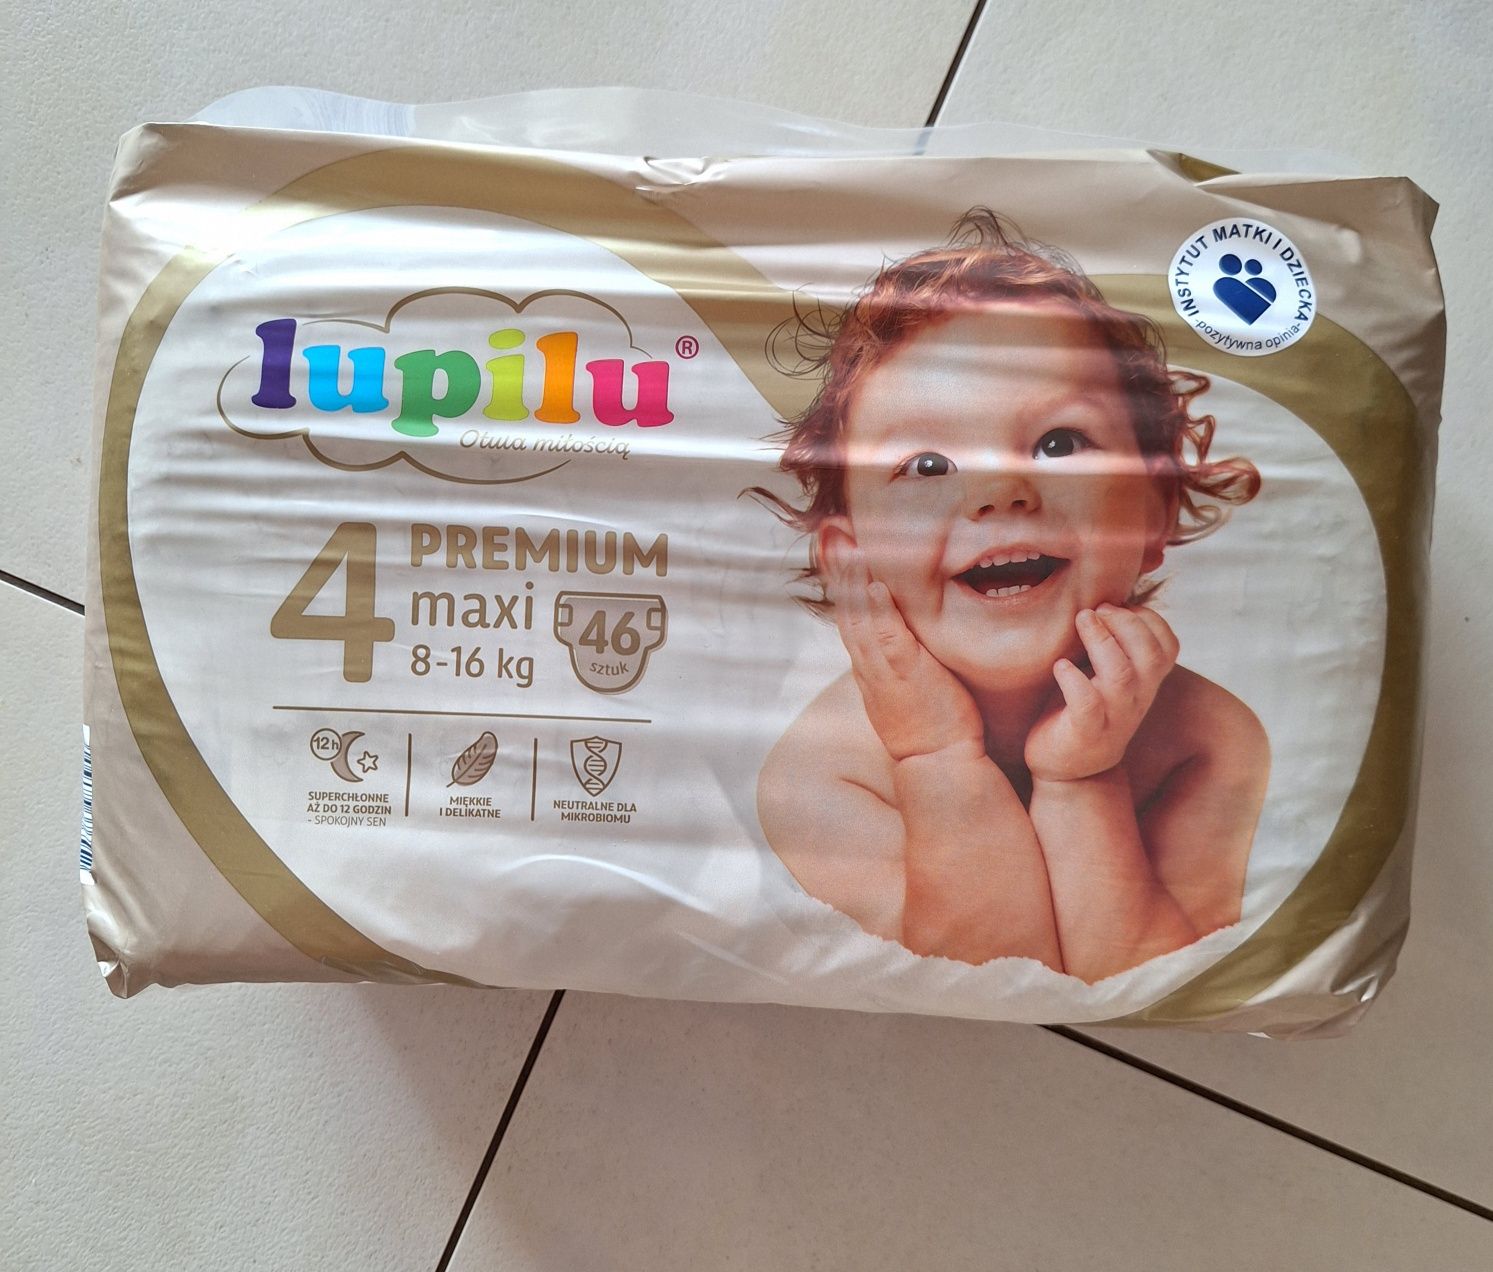 Pampers Lupilu Premium 4